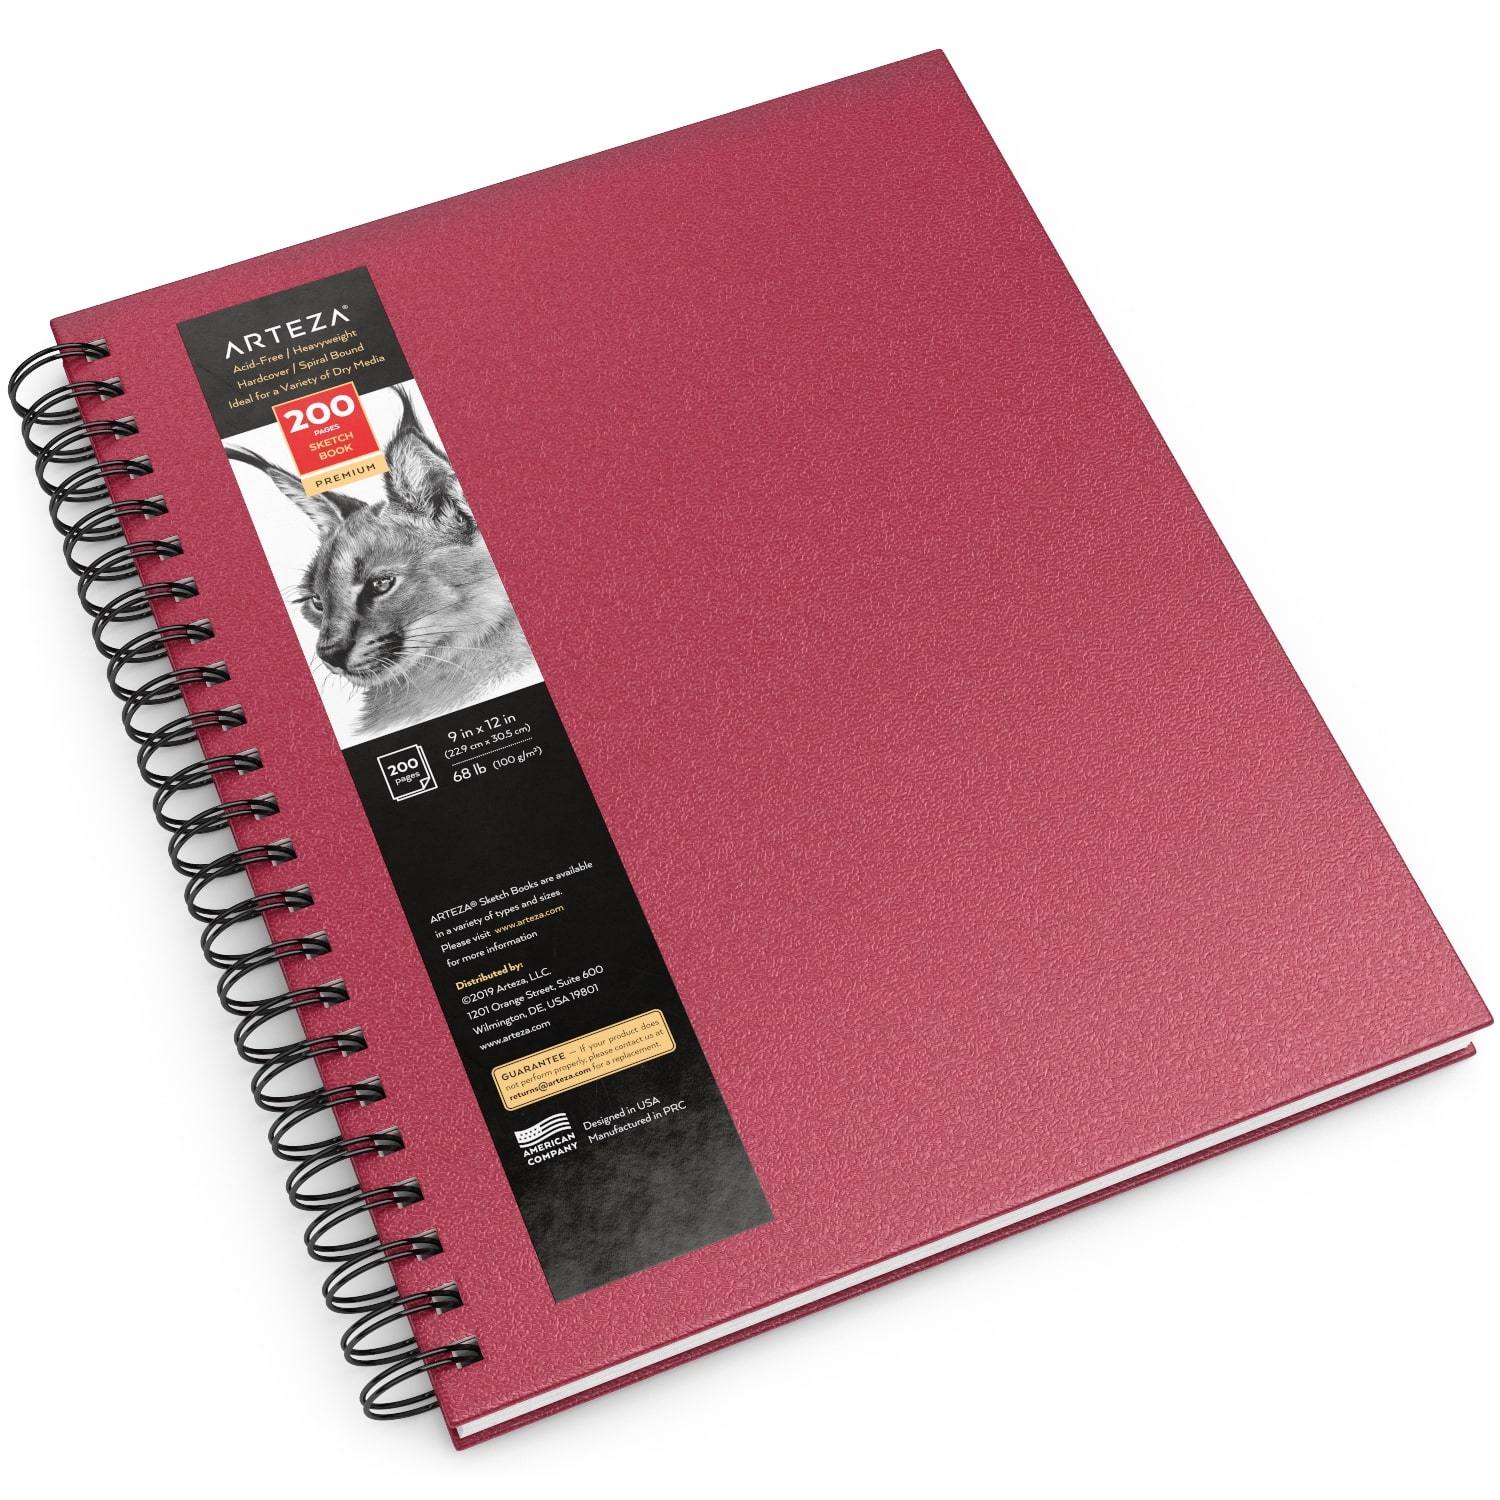 https://arteza.com/cdn/shop/products/sketchbook-spiral-bound-hardcover-pink-9-x-12-100-sheets_Y54Fqhoj.jpg?v=1652891914&width=1946